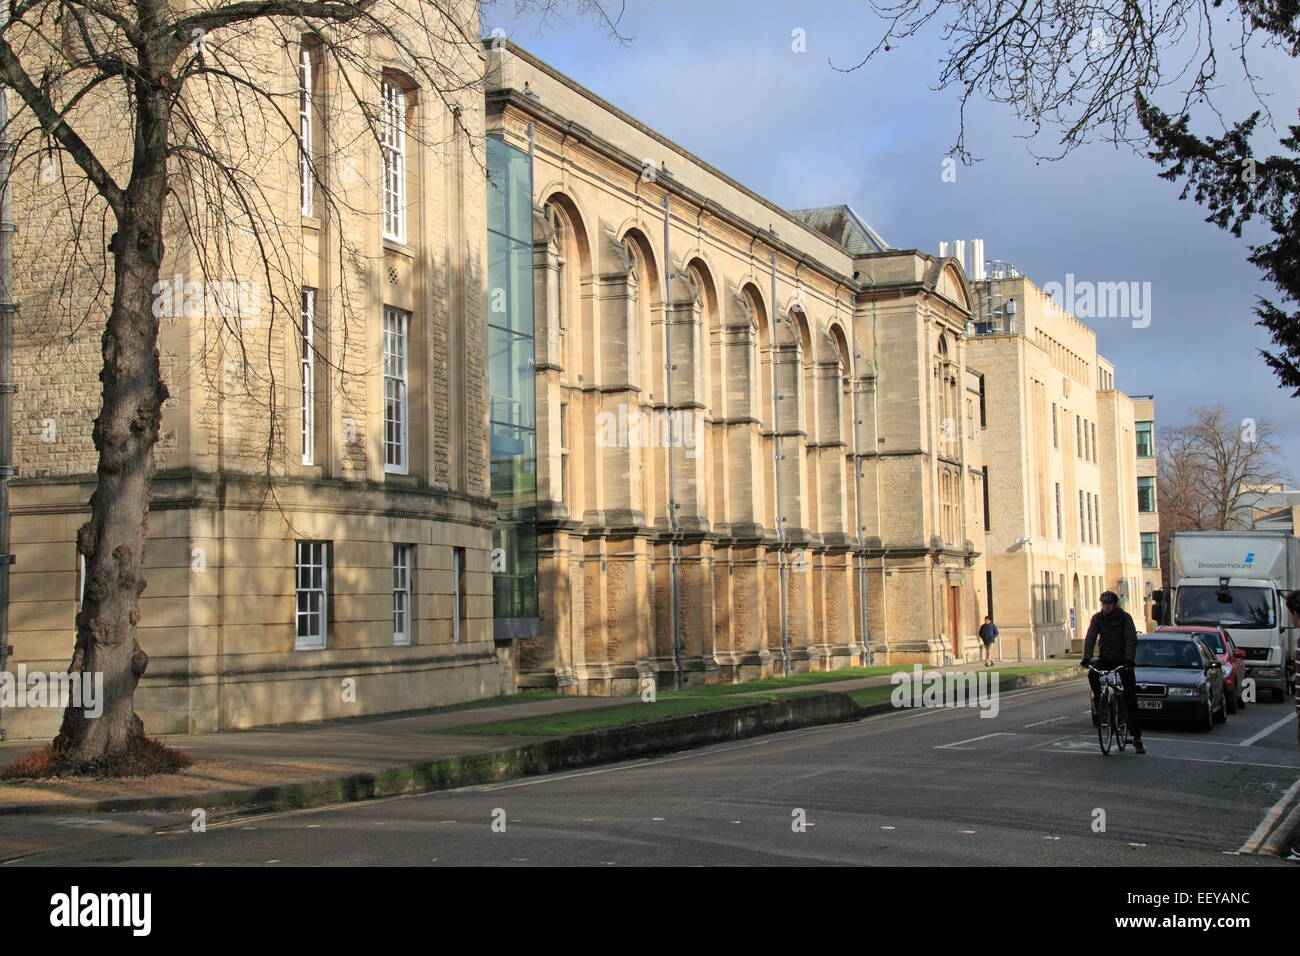 Bibliothèque Scientifique Radcliffe, Parcs Road, Oxford, Oxfordshire, Angleterre, Grande-Bretagne, Royaume-Uni, UK, Europe Banque D'Images